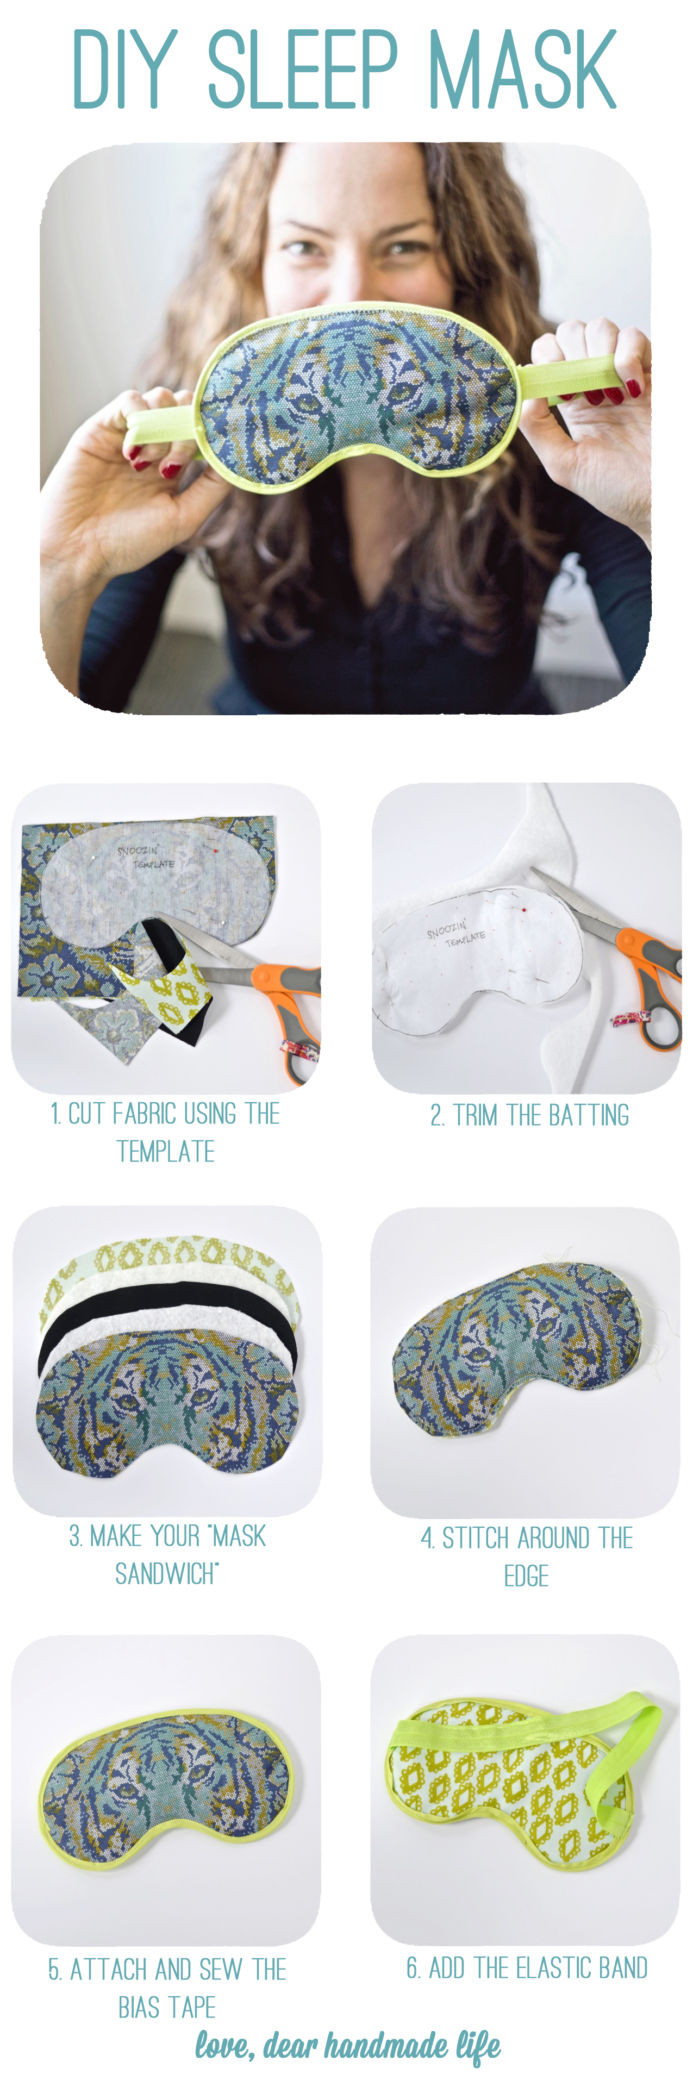 Best ideas about DIY Sleep Mask
. Save or Pin DIY Sleep Mask Dear Handmade Life Now.